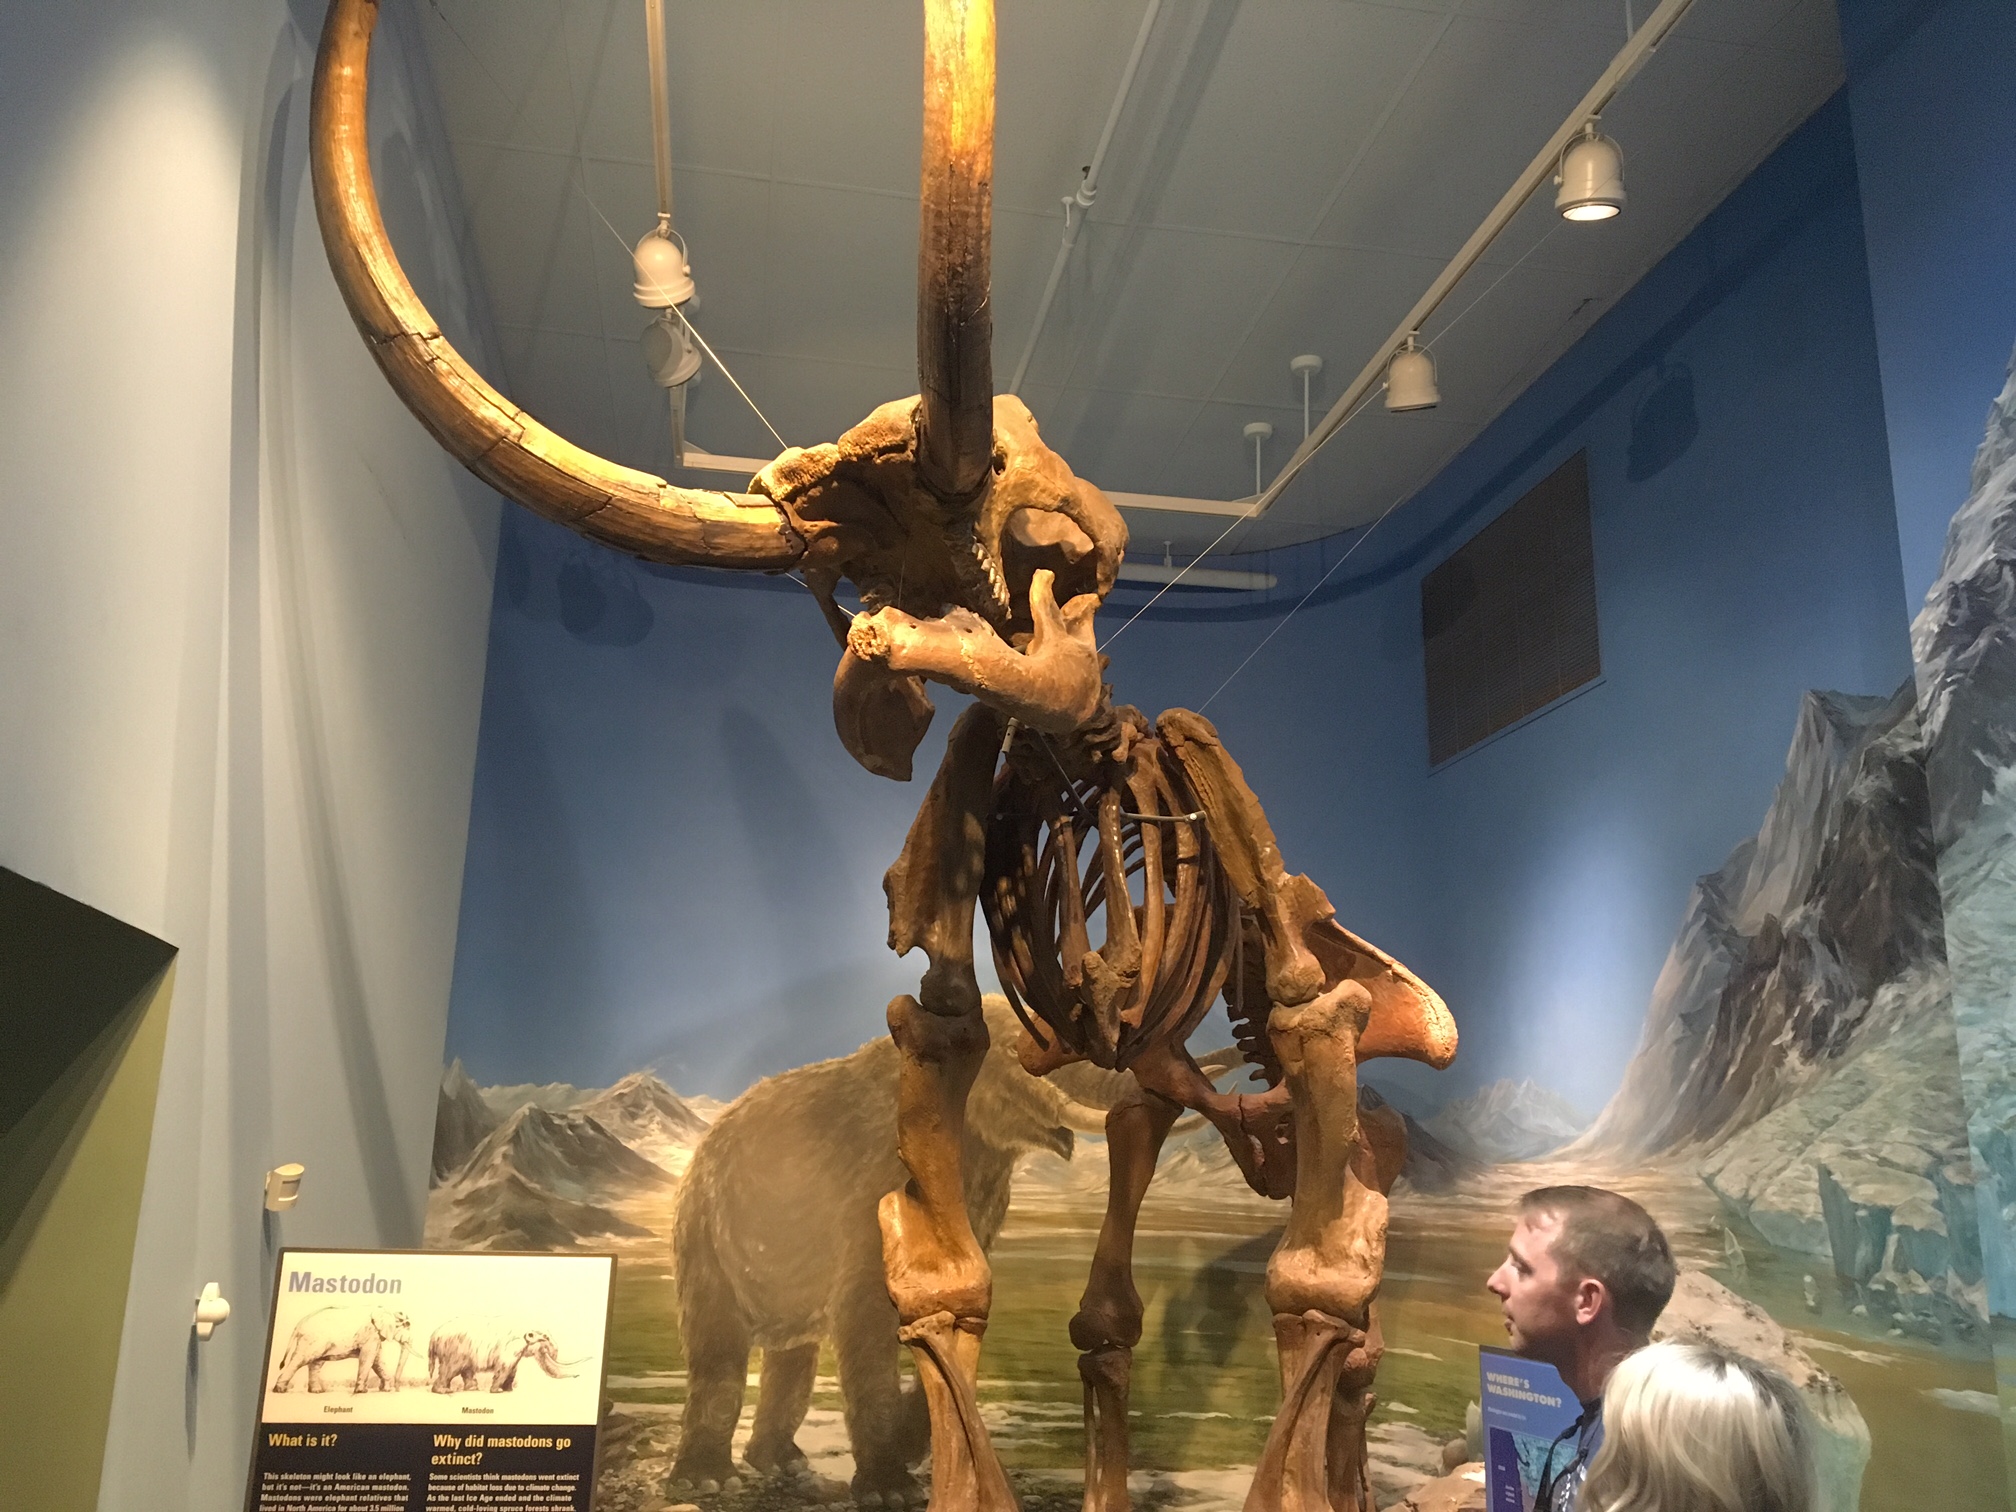 A mastodon skeleton also on display